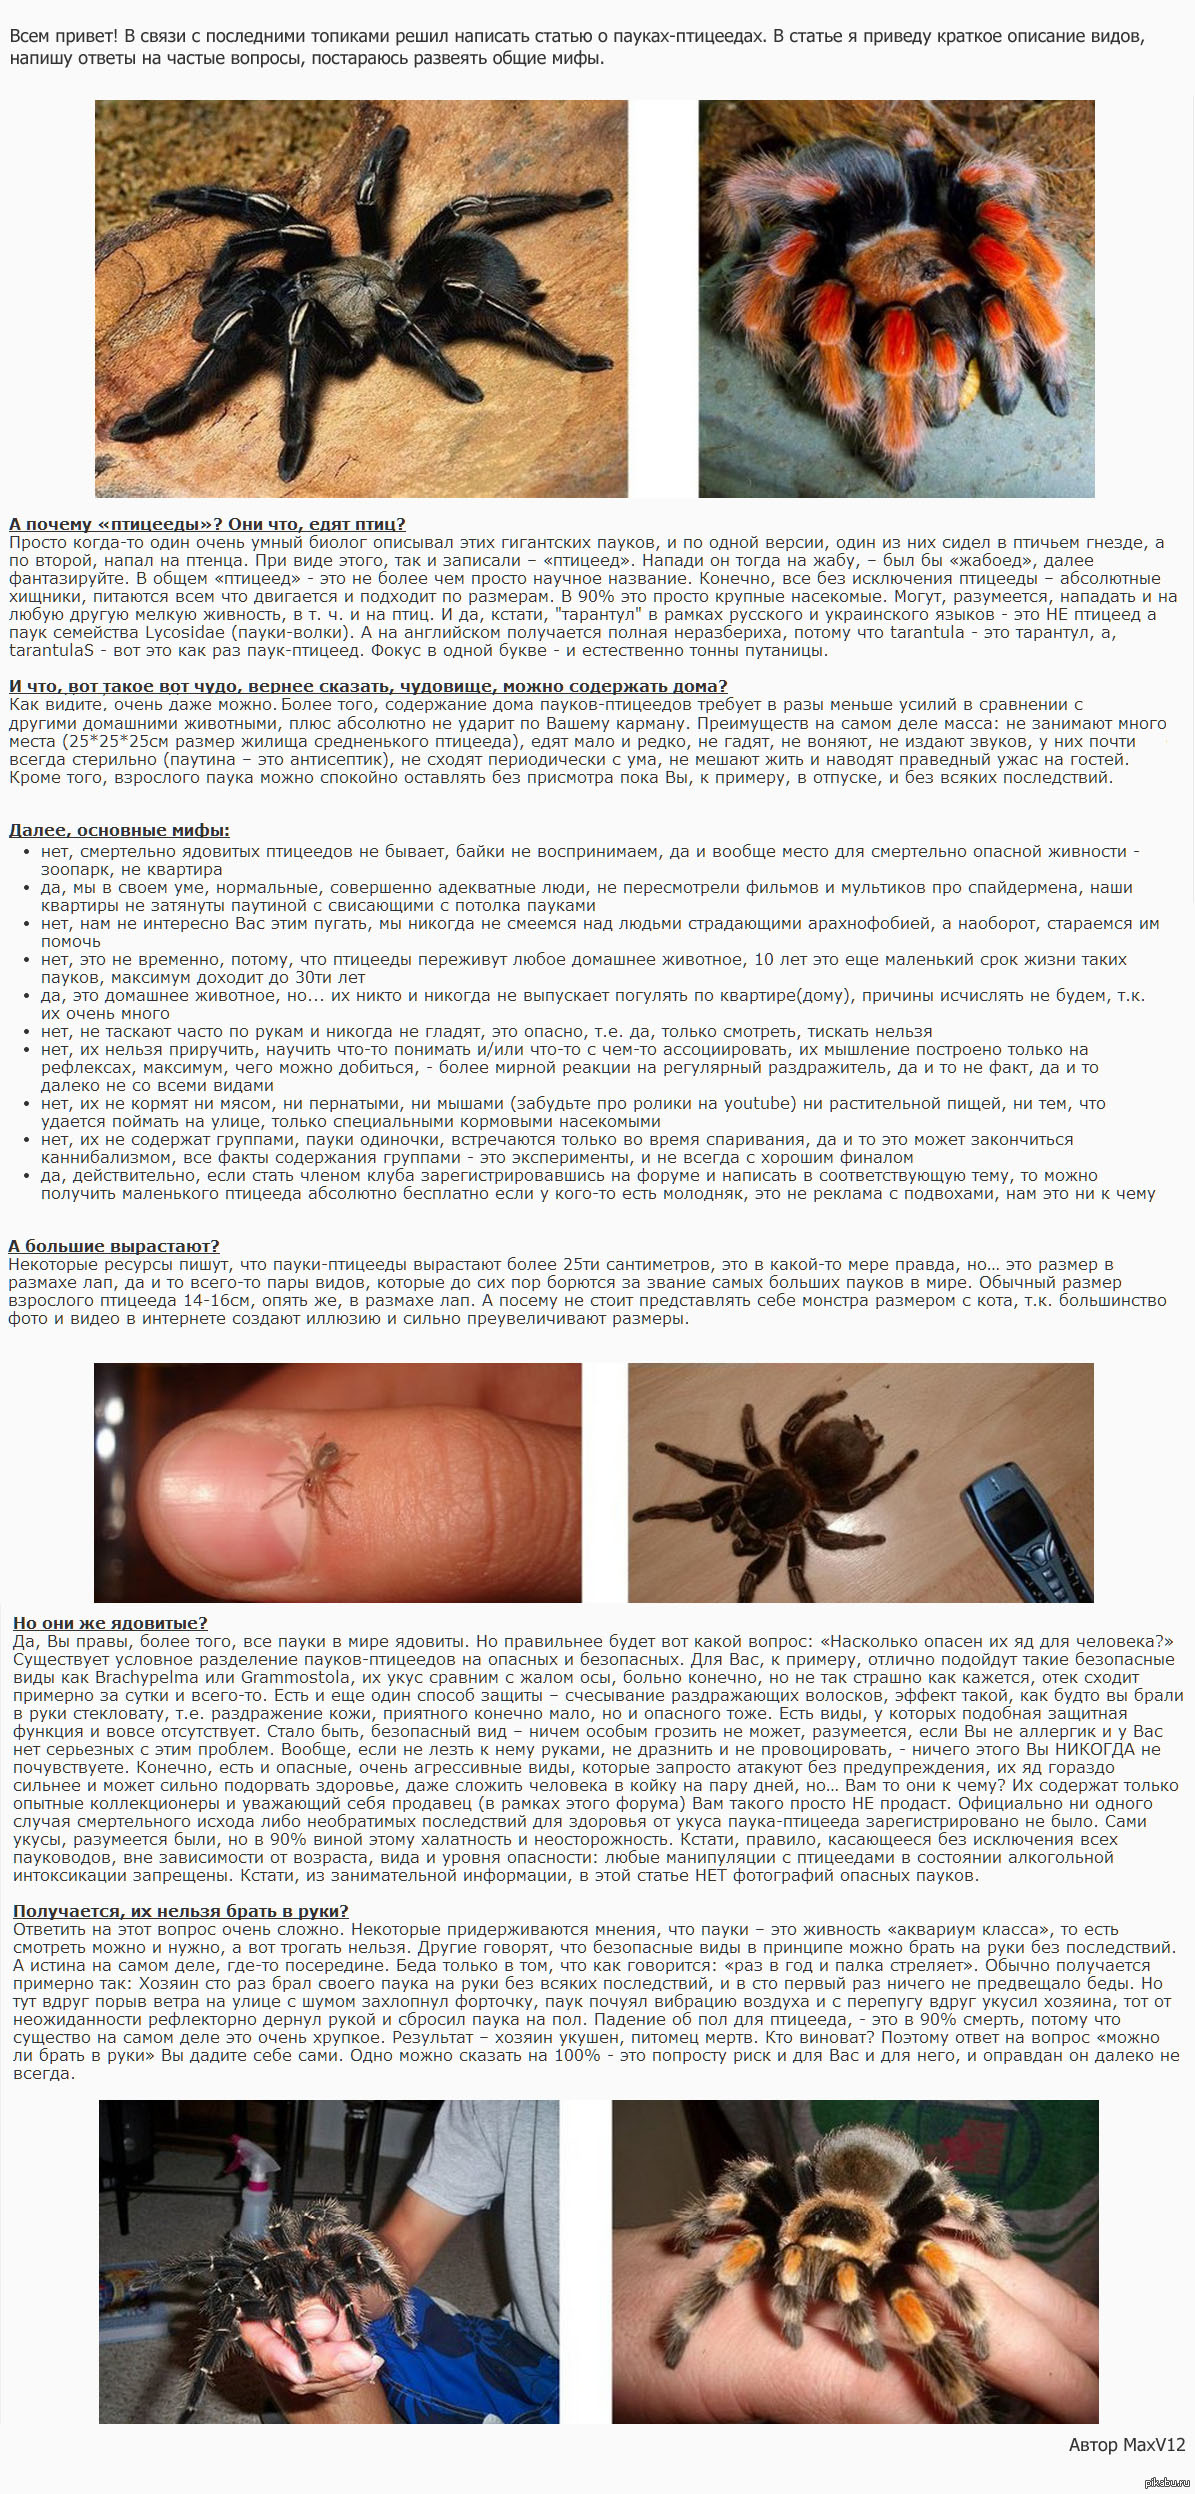 Домашние пауки – фото, виды, содержание, питание, размножение